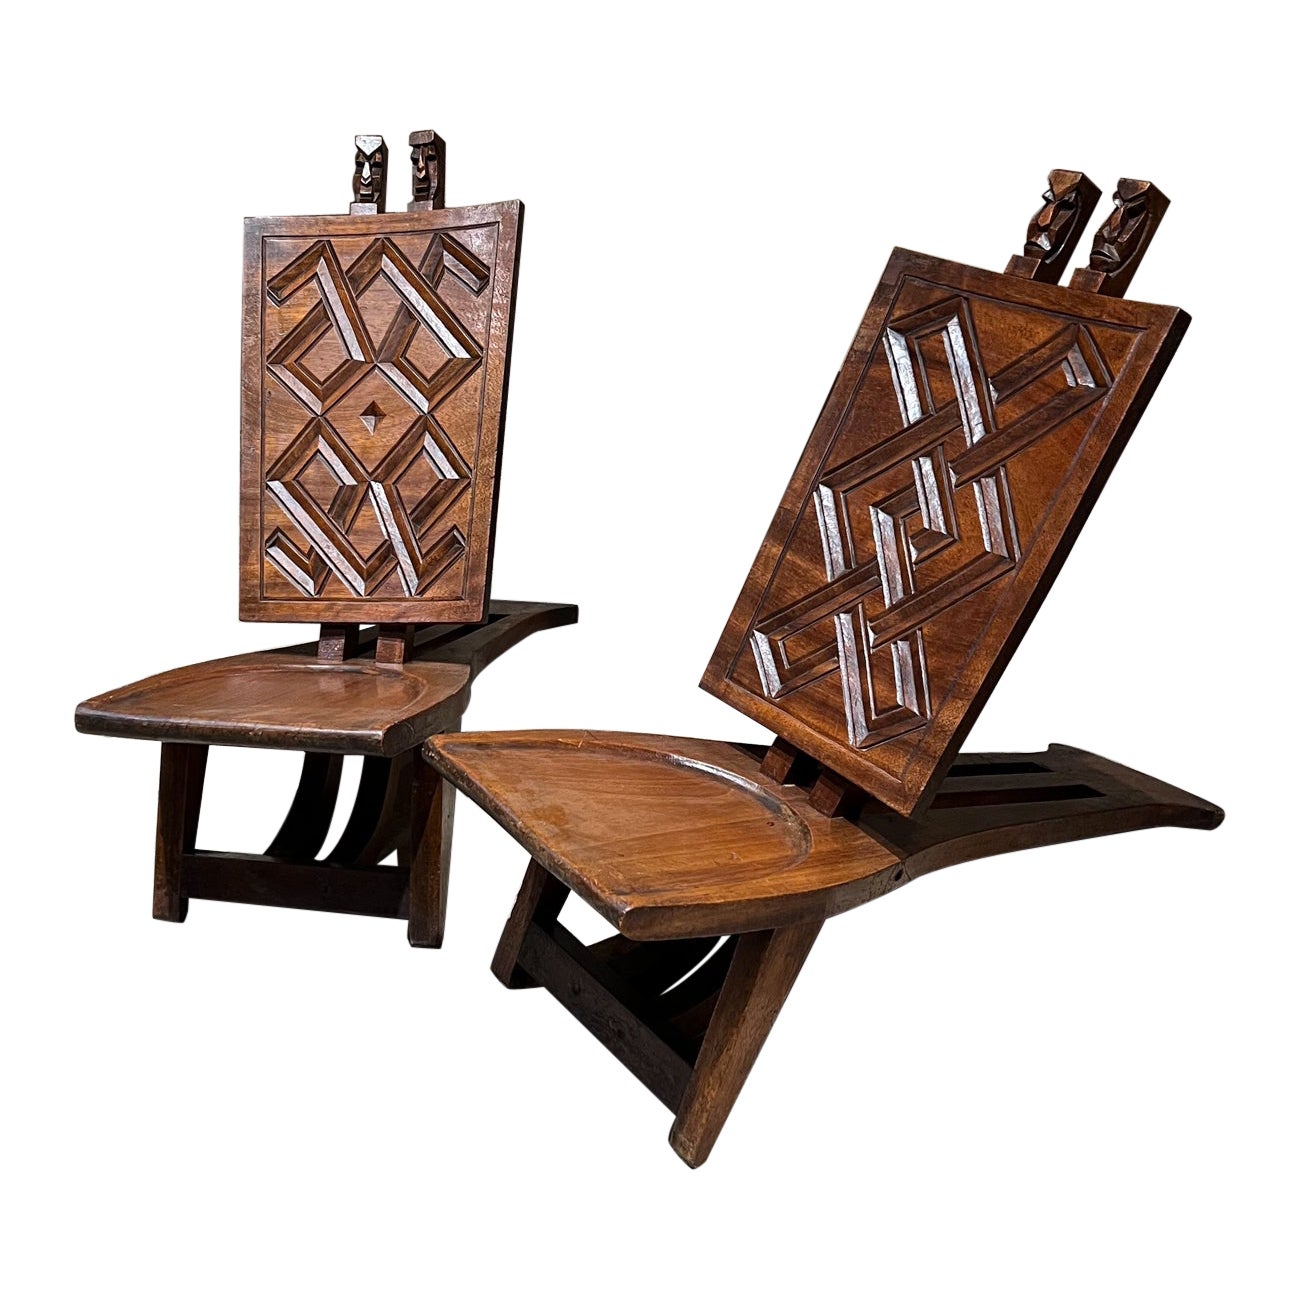 Afrikanische zeremonielle Chief Chairs aus handgeschnitztem Holz, 1960er Jahre